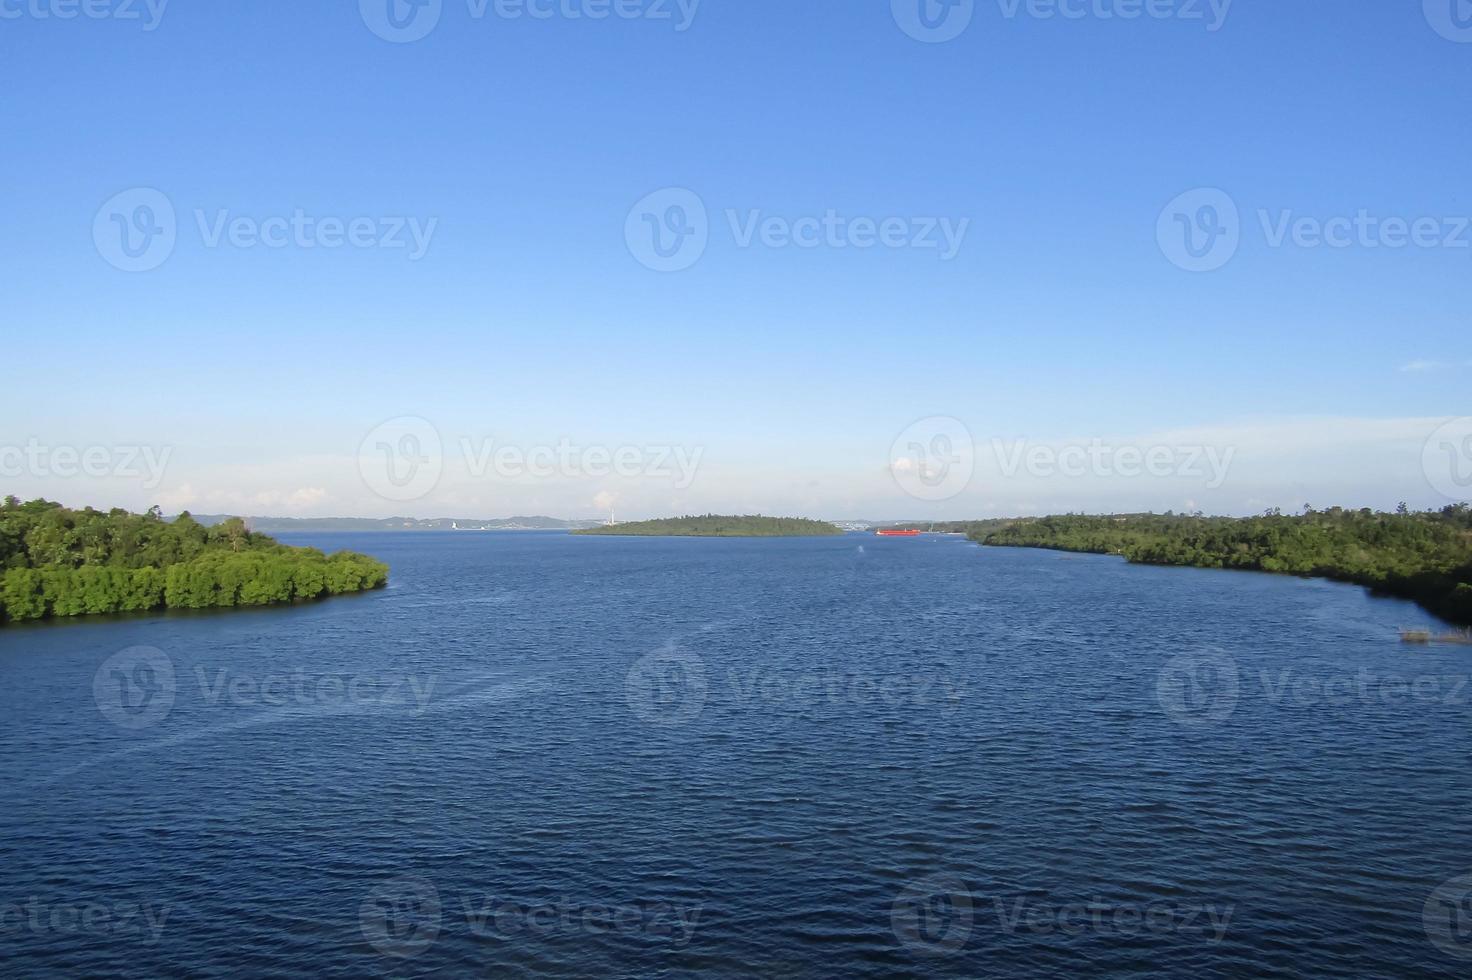 hermosa vista de las aguas de la bahía de la isla de balang, kalimantan foto